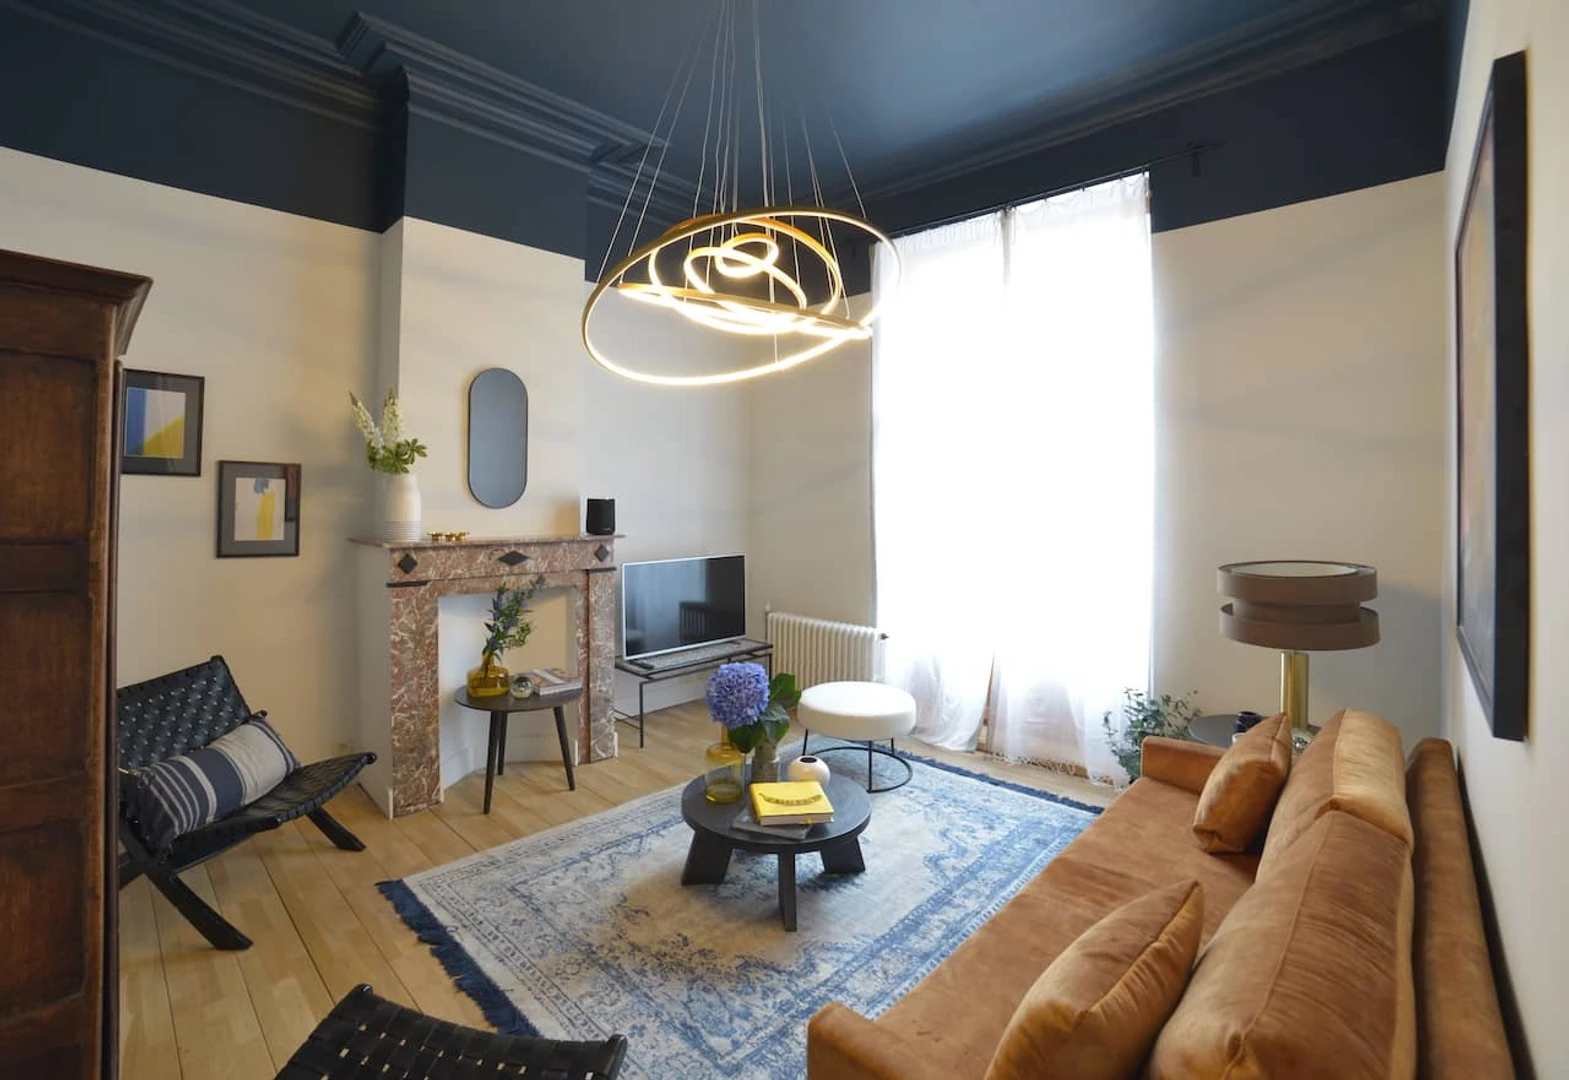 Chambre à louer dans un appartement en colocation à Bruxelles/bruxelles